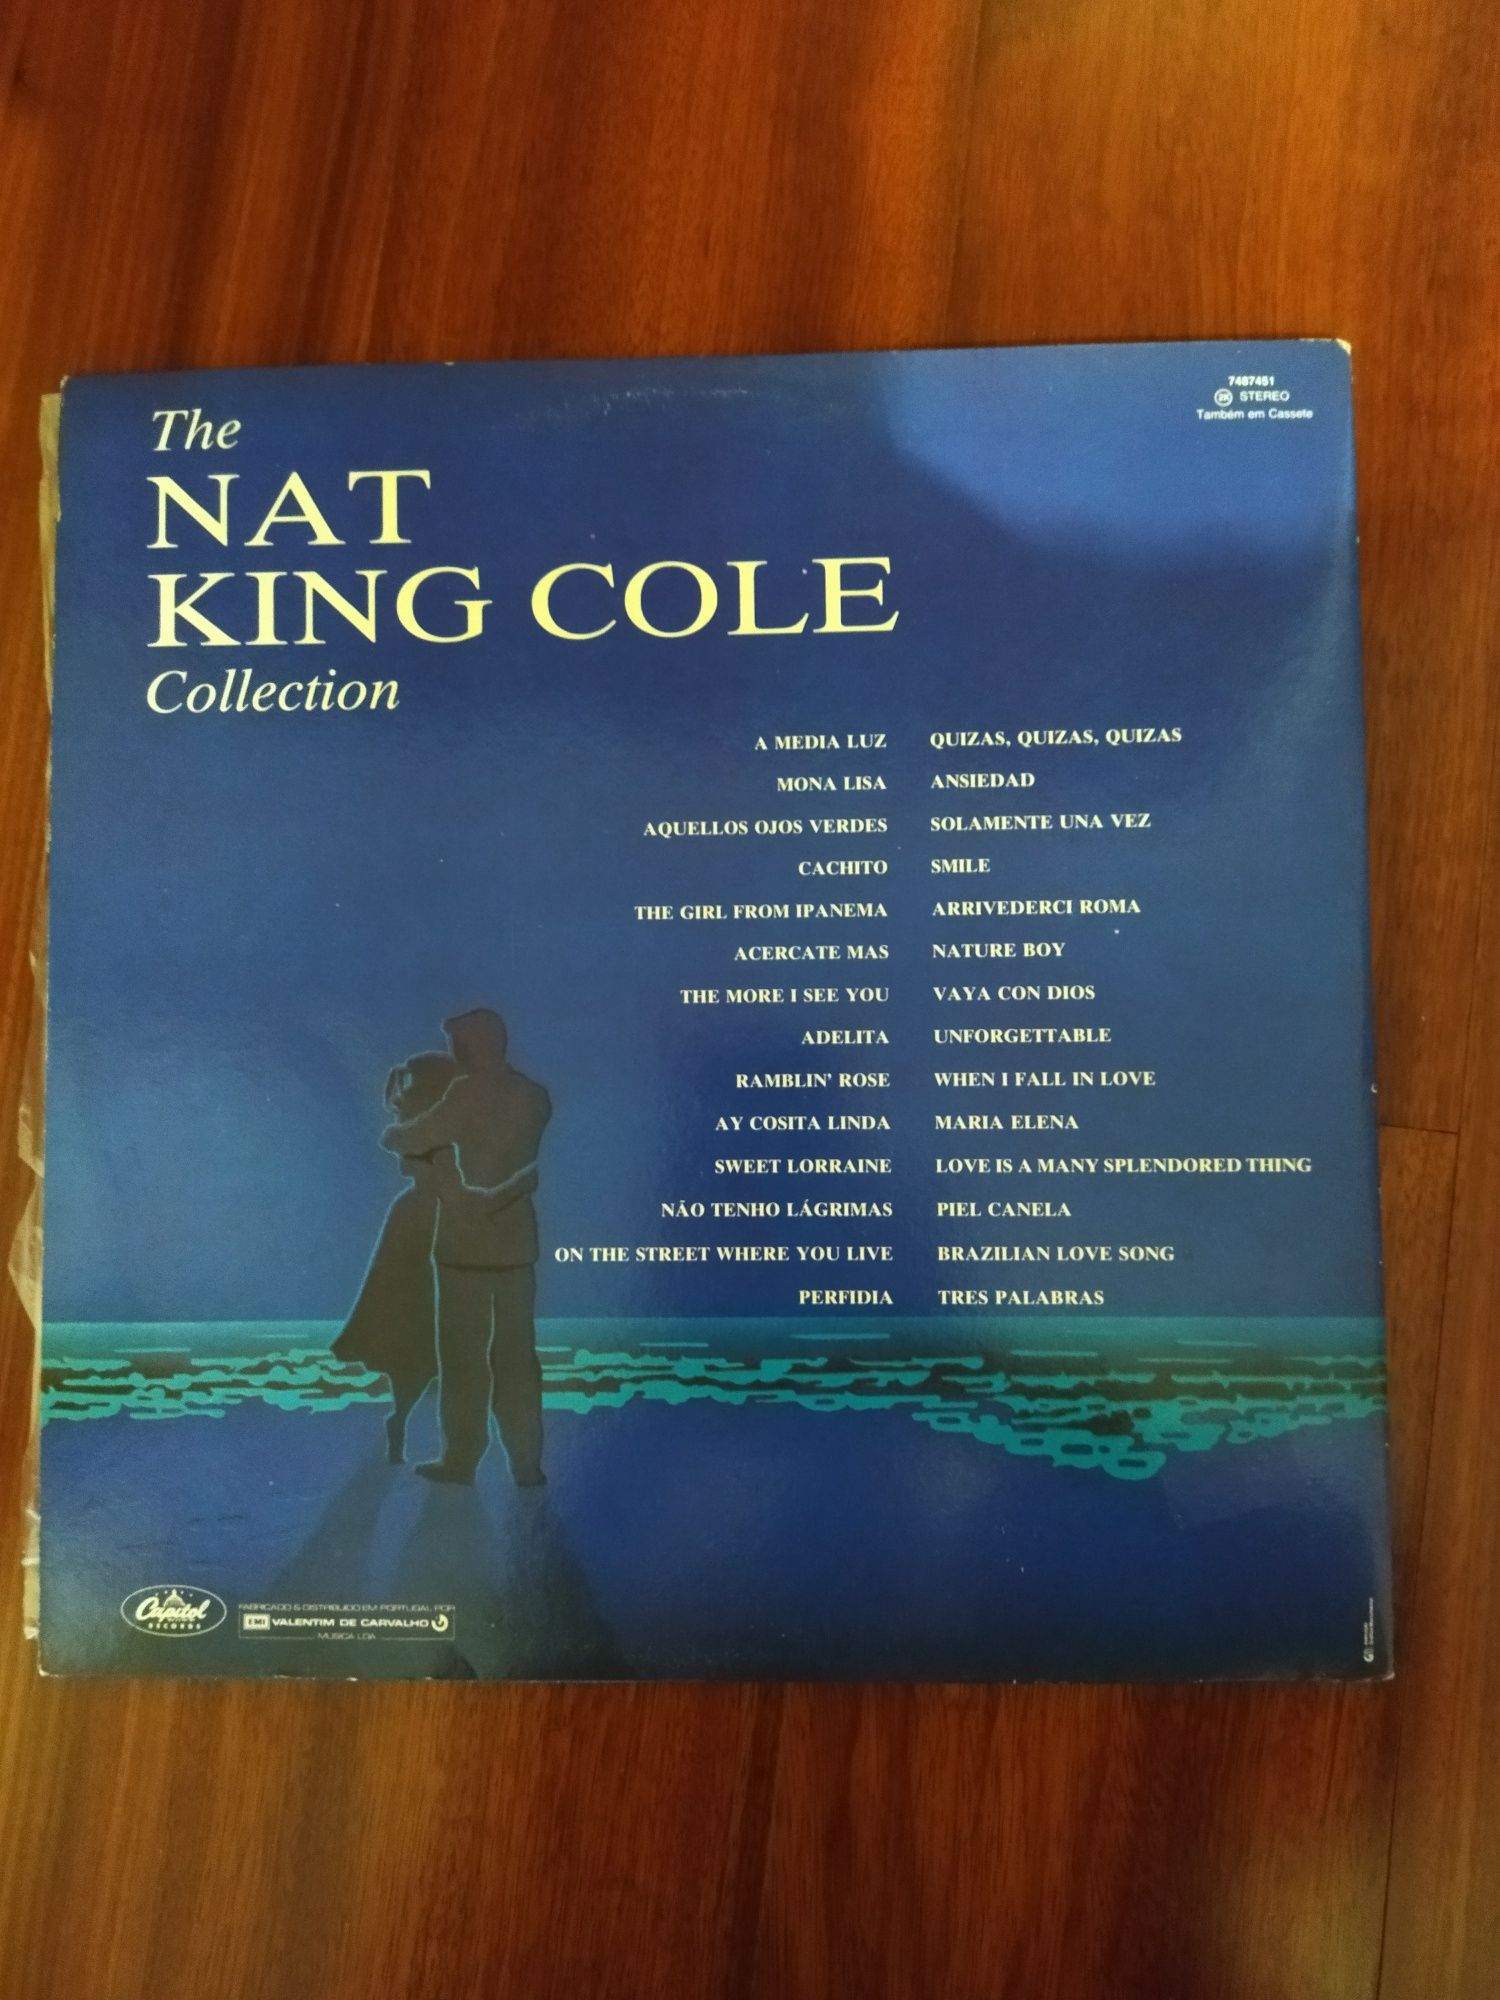 Discos de vinil do Nat King Cole